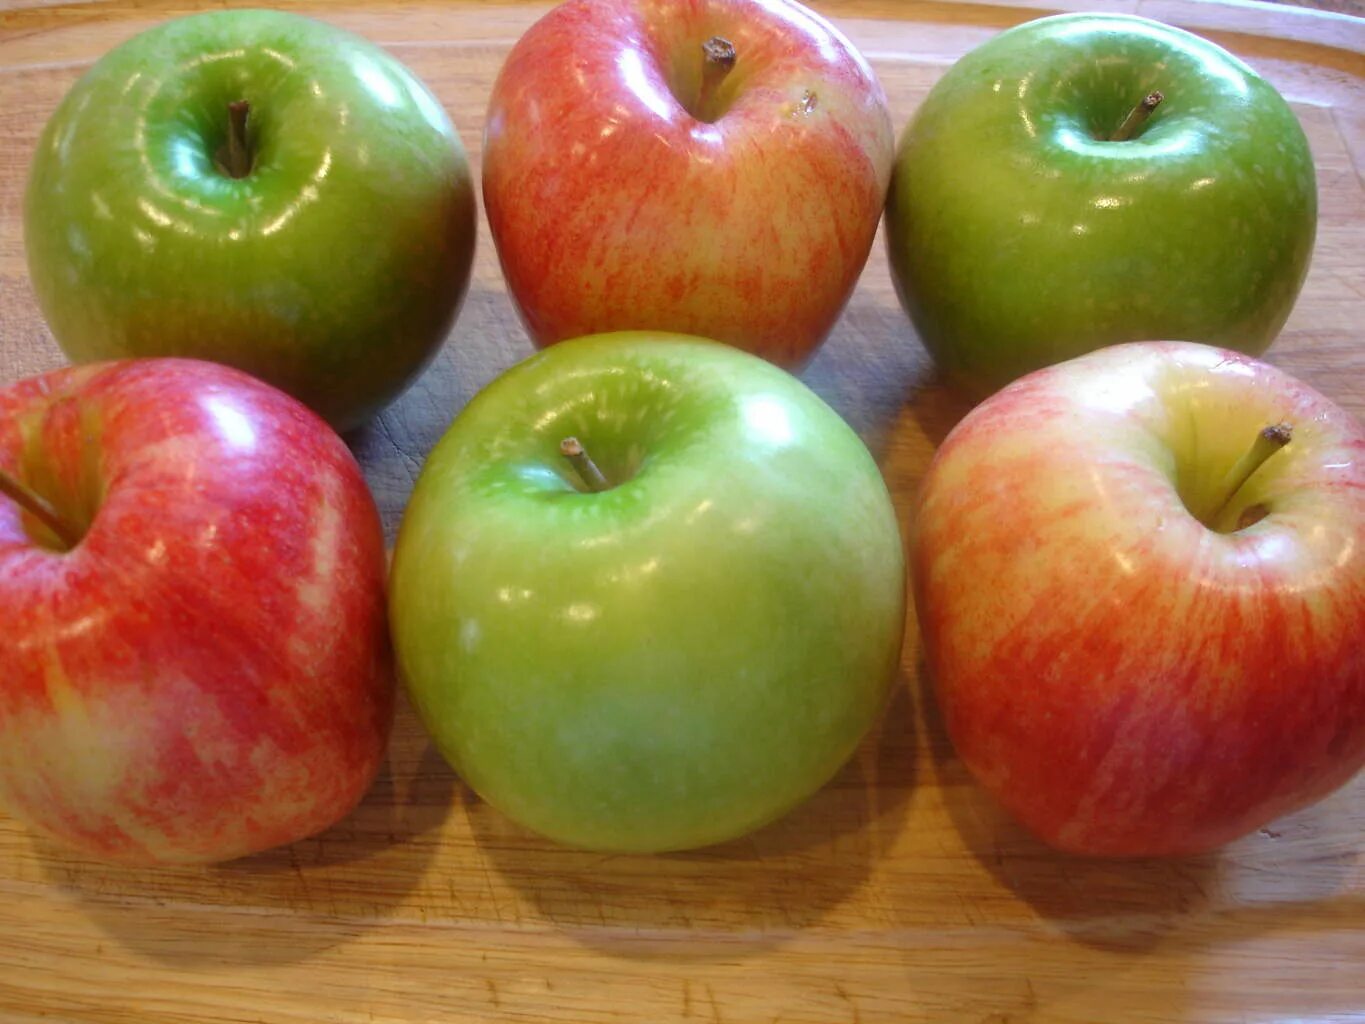 Шесть яблок. Семь яблок. Пять яблок. Яблоко лежит на столе. Яблоко в 6 месяцев